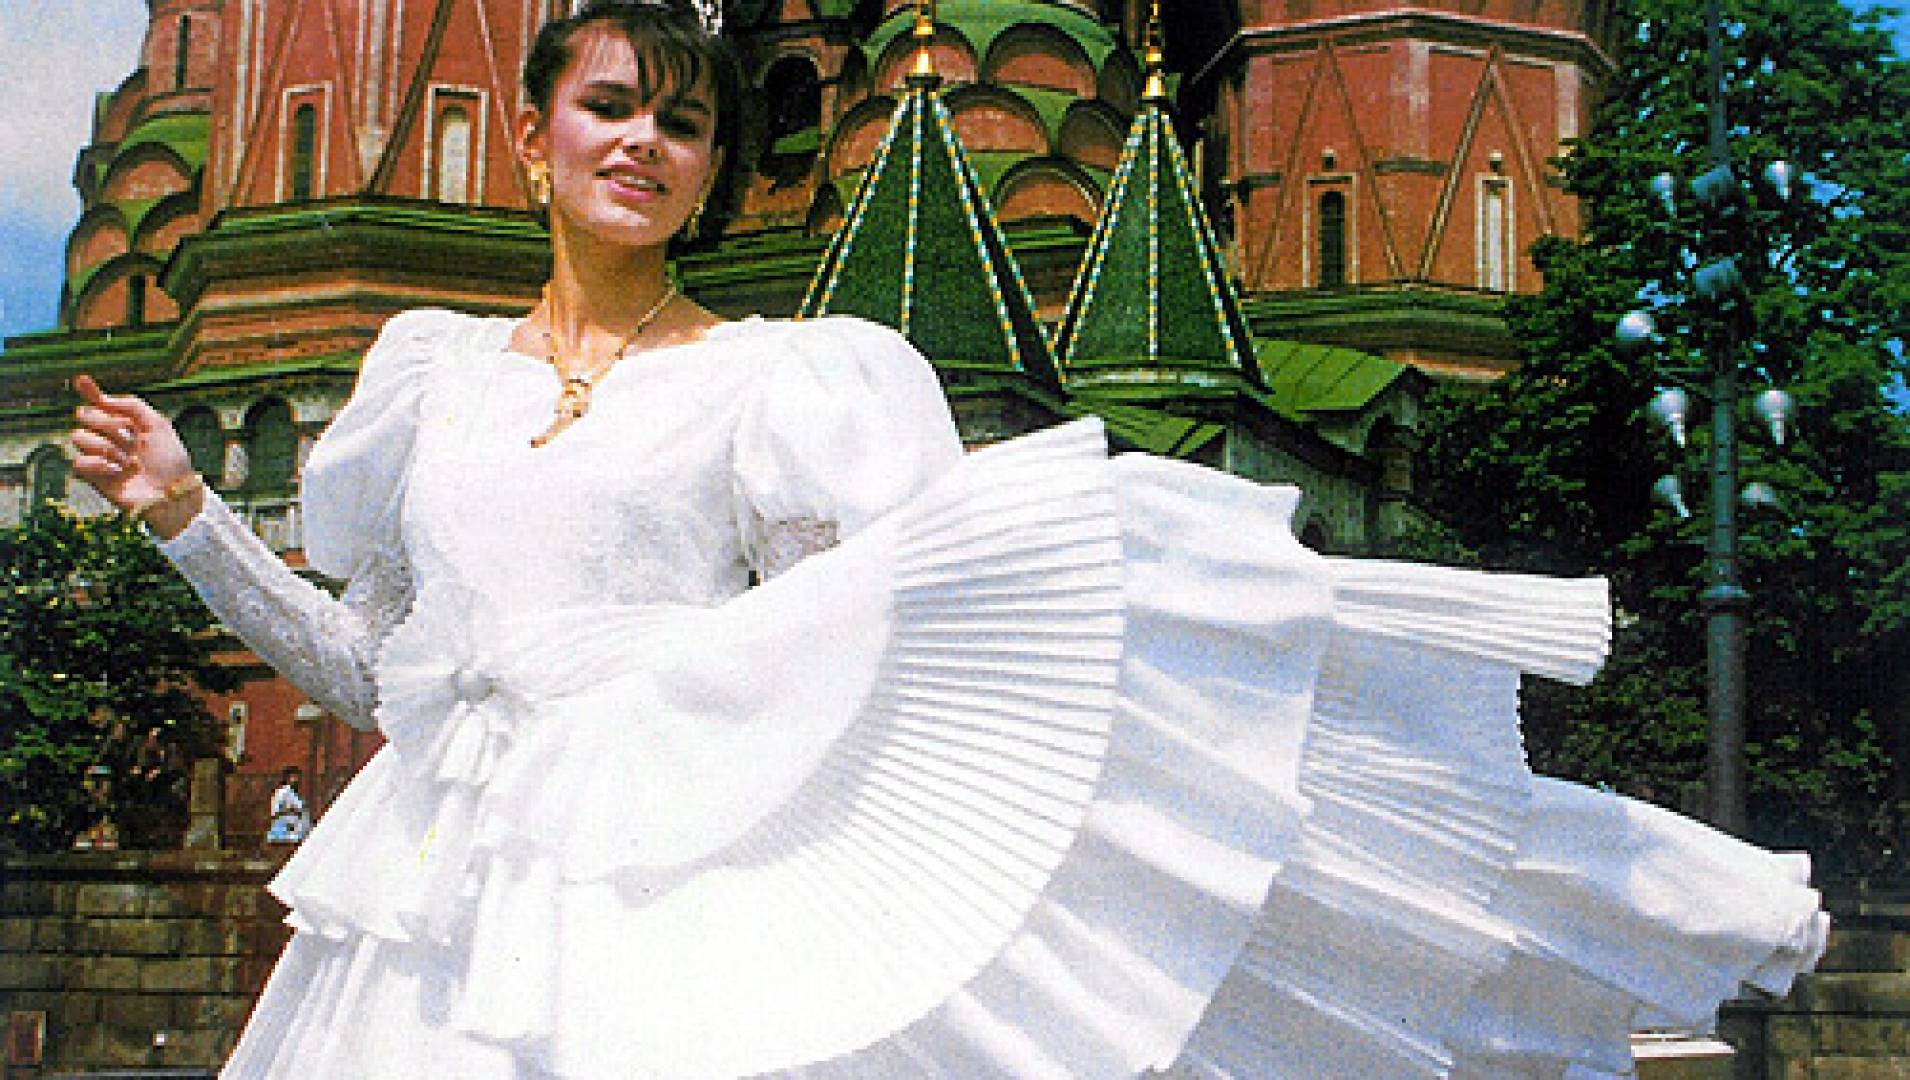 конкурс мисс москва 1988